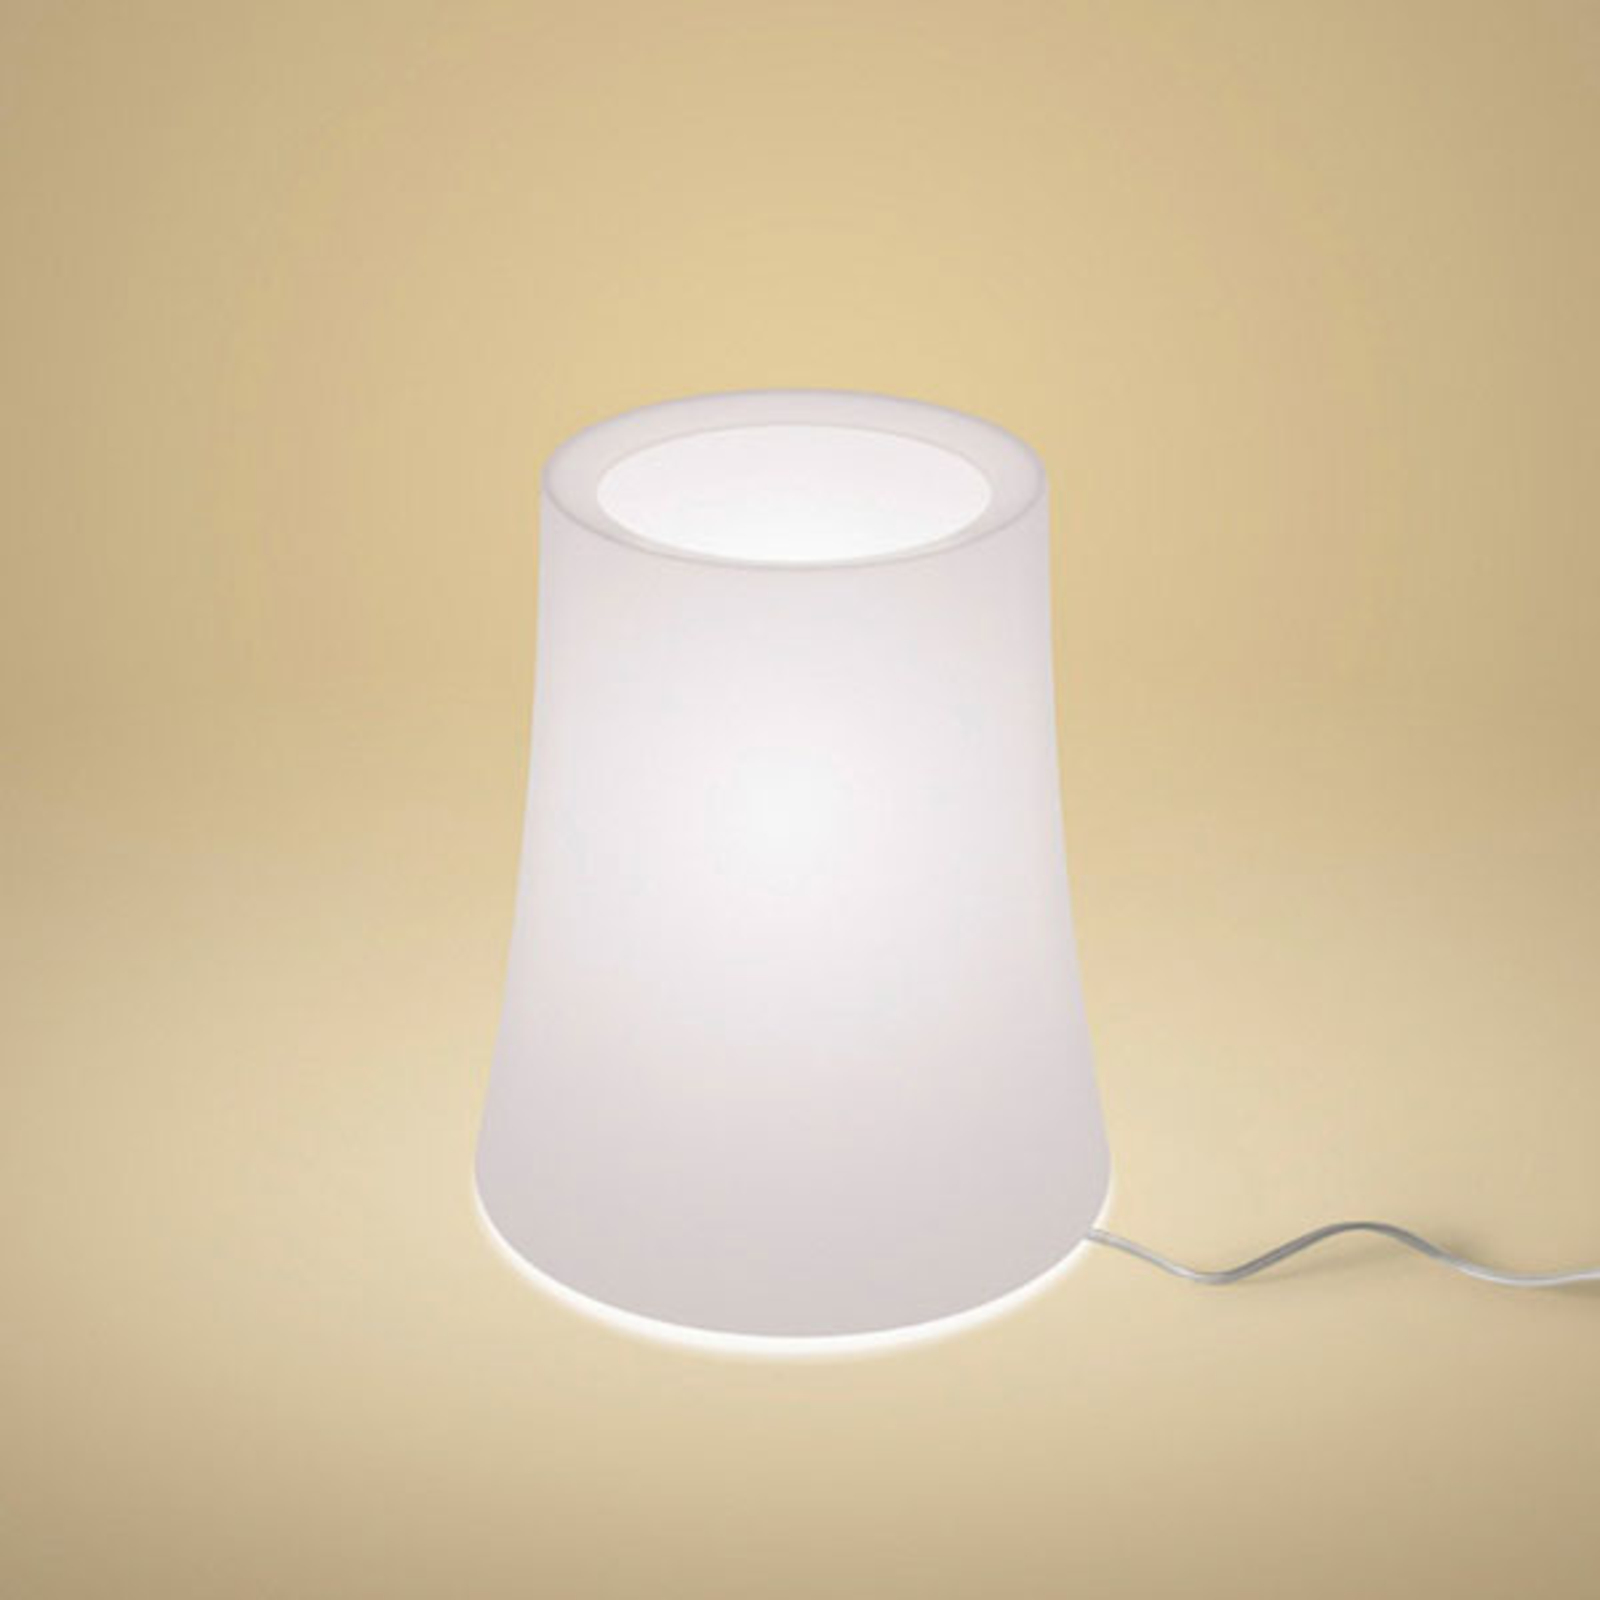 Foscarini Birdie Zero table lamp, height 29 cm